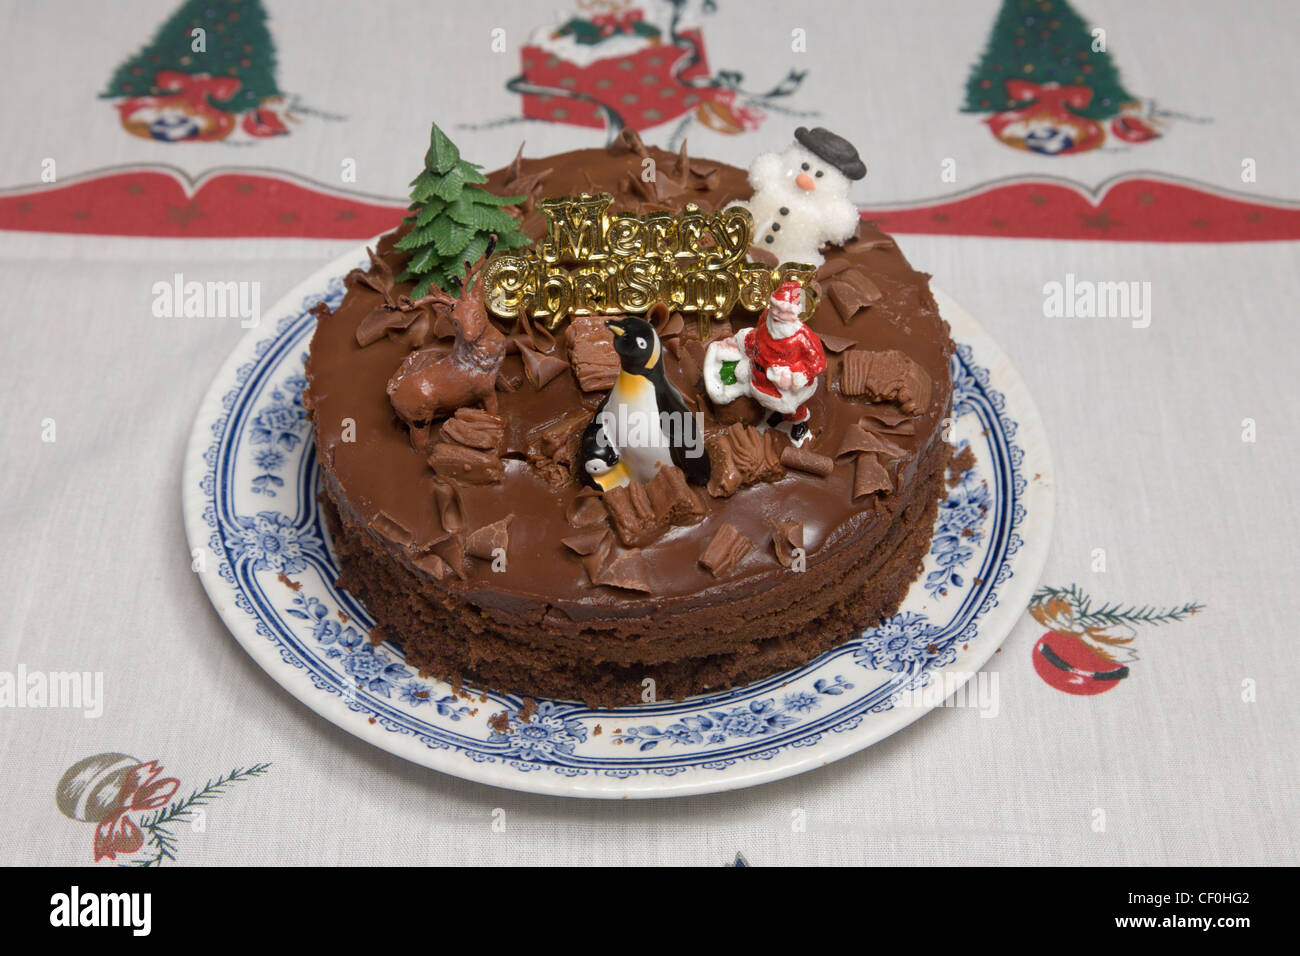 Gâteau au chocolat de Noël avec penguin Banque D'Images